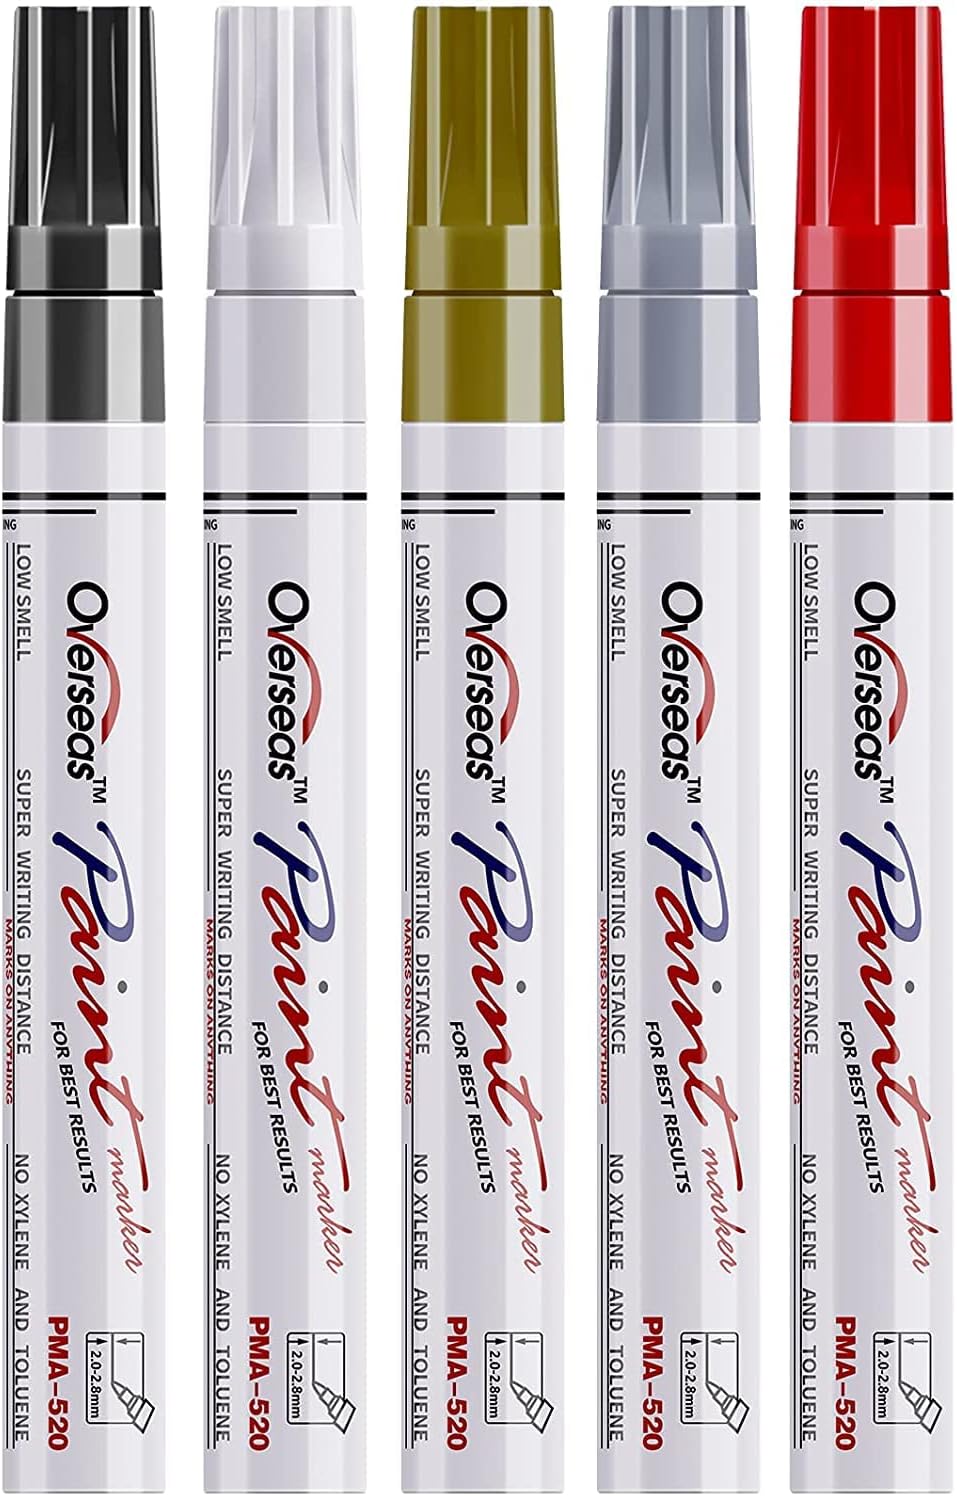 Paint Marker Pens - 5 Pack Permanent Oil Based Paint [...]